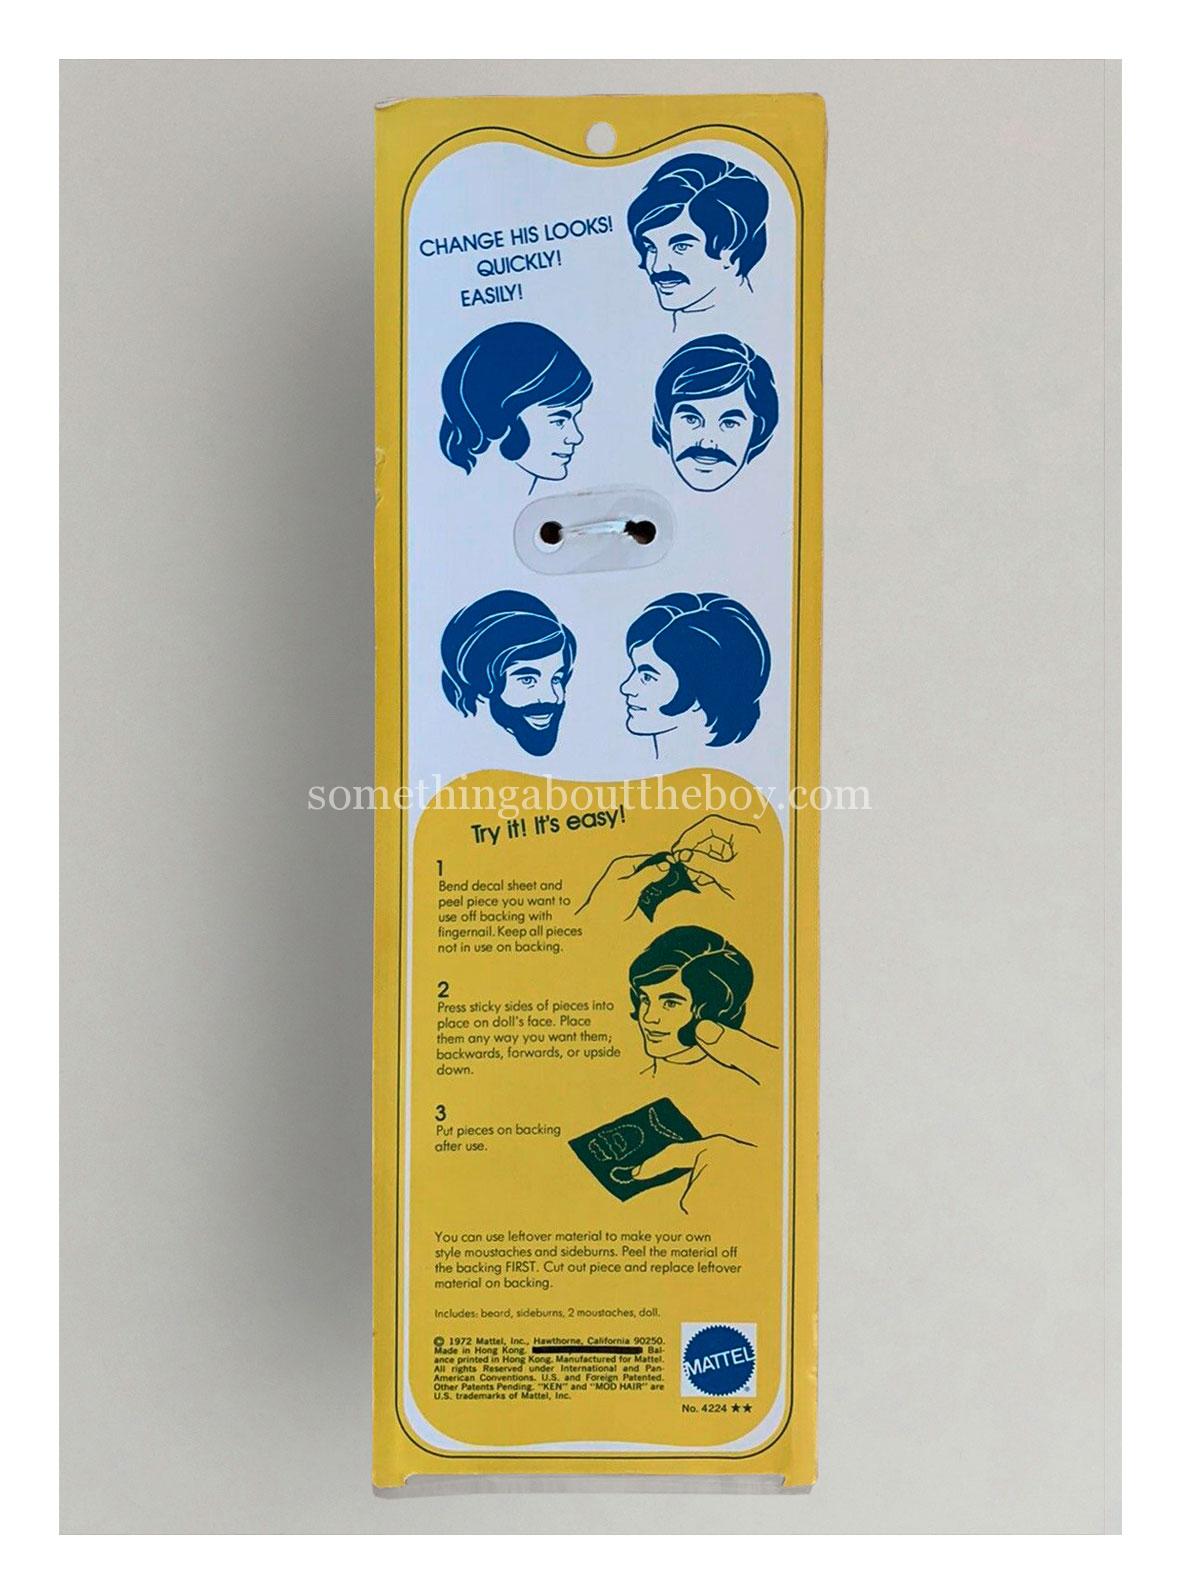 #4224 Mod Hair Ken (Slim packaging made in Hong Kong)